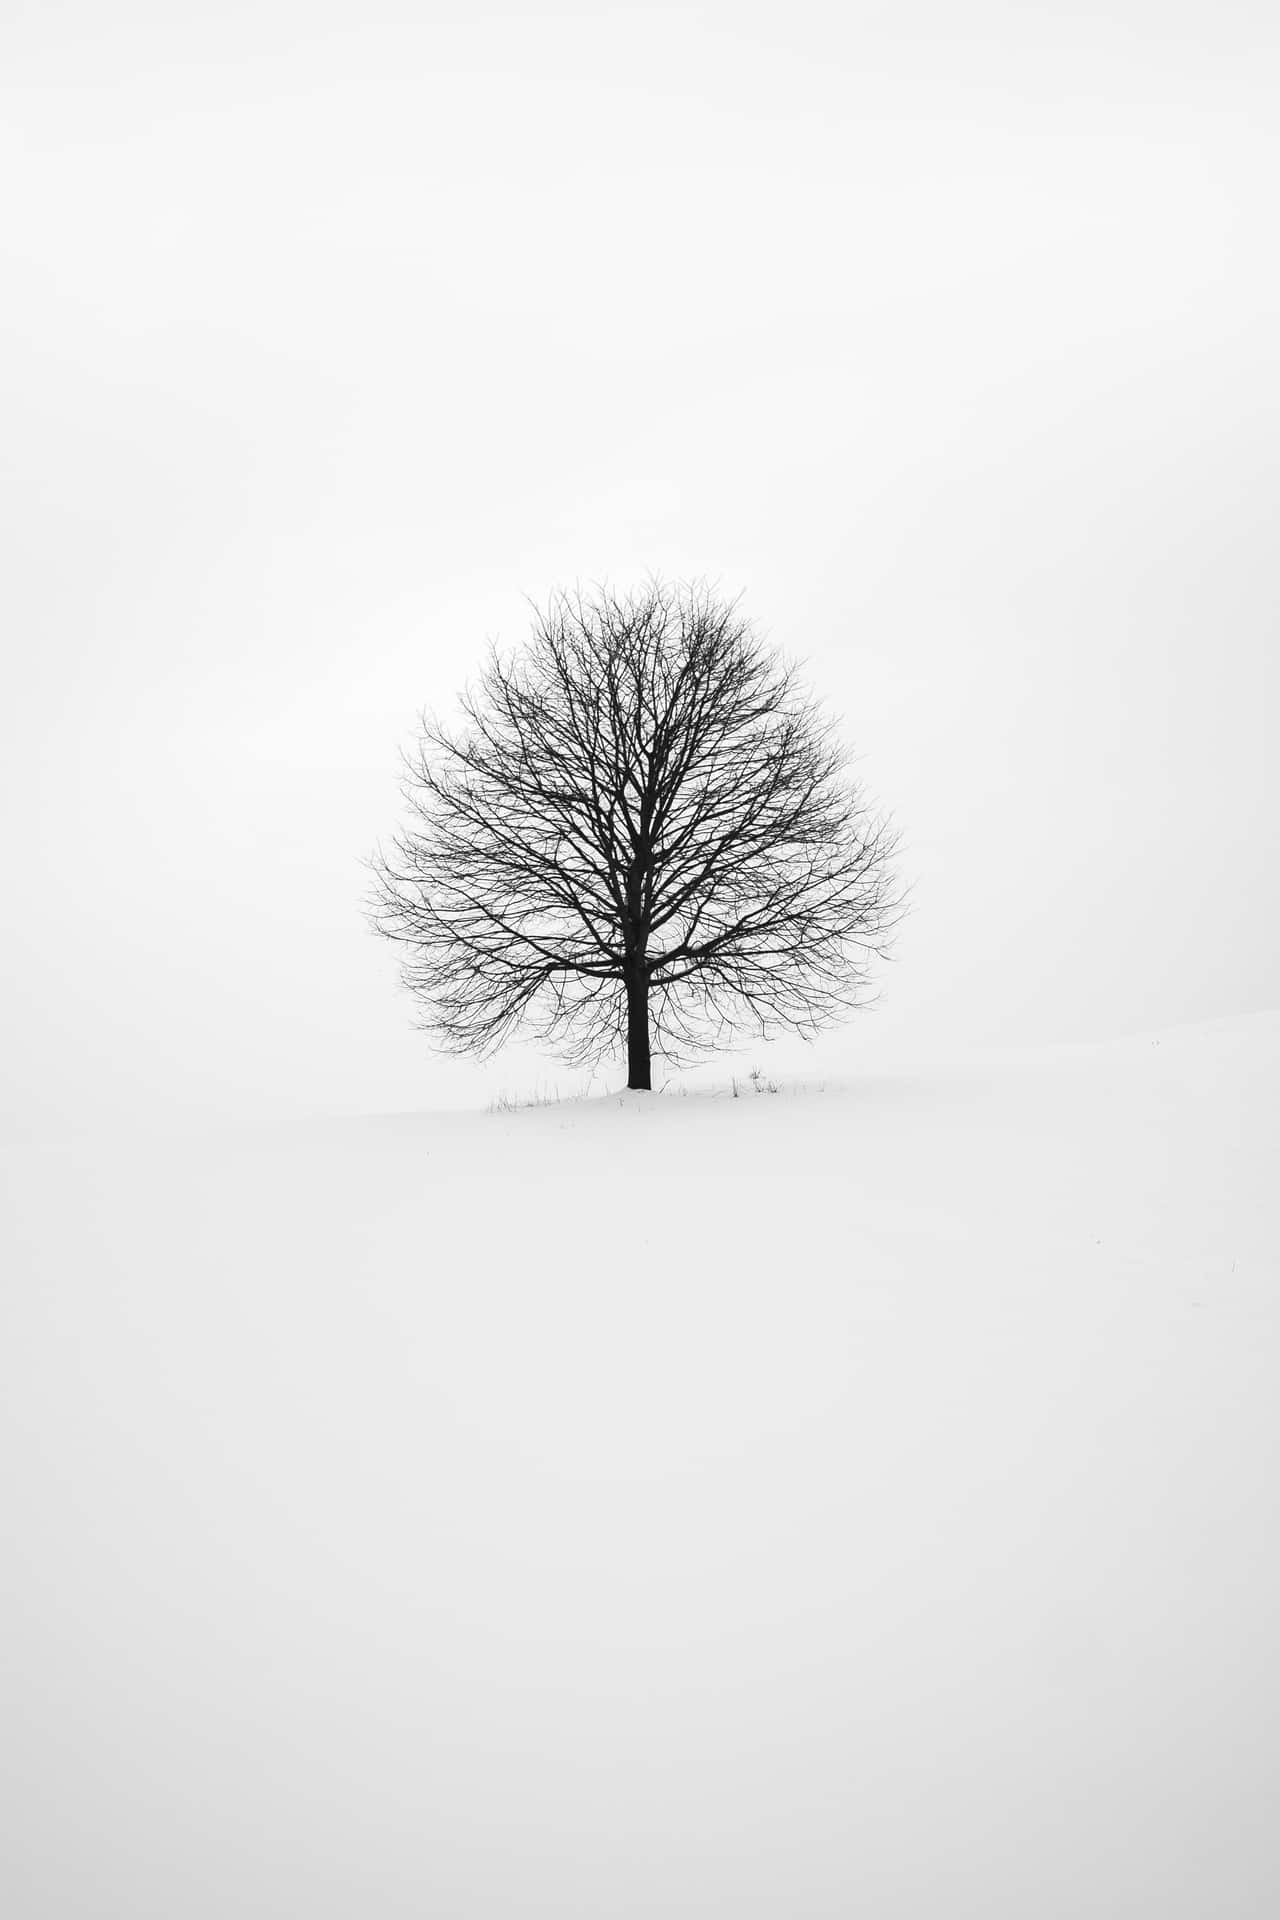 White Image Background Alone Tree